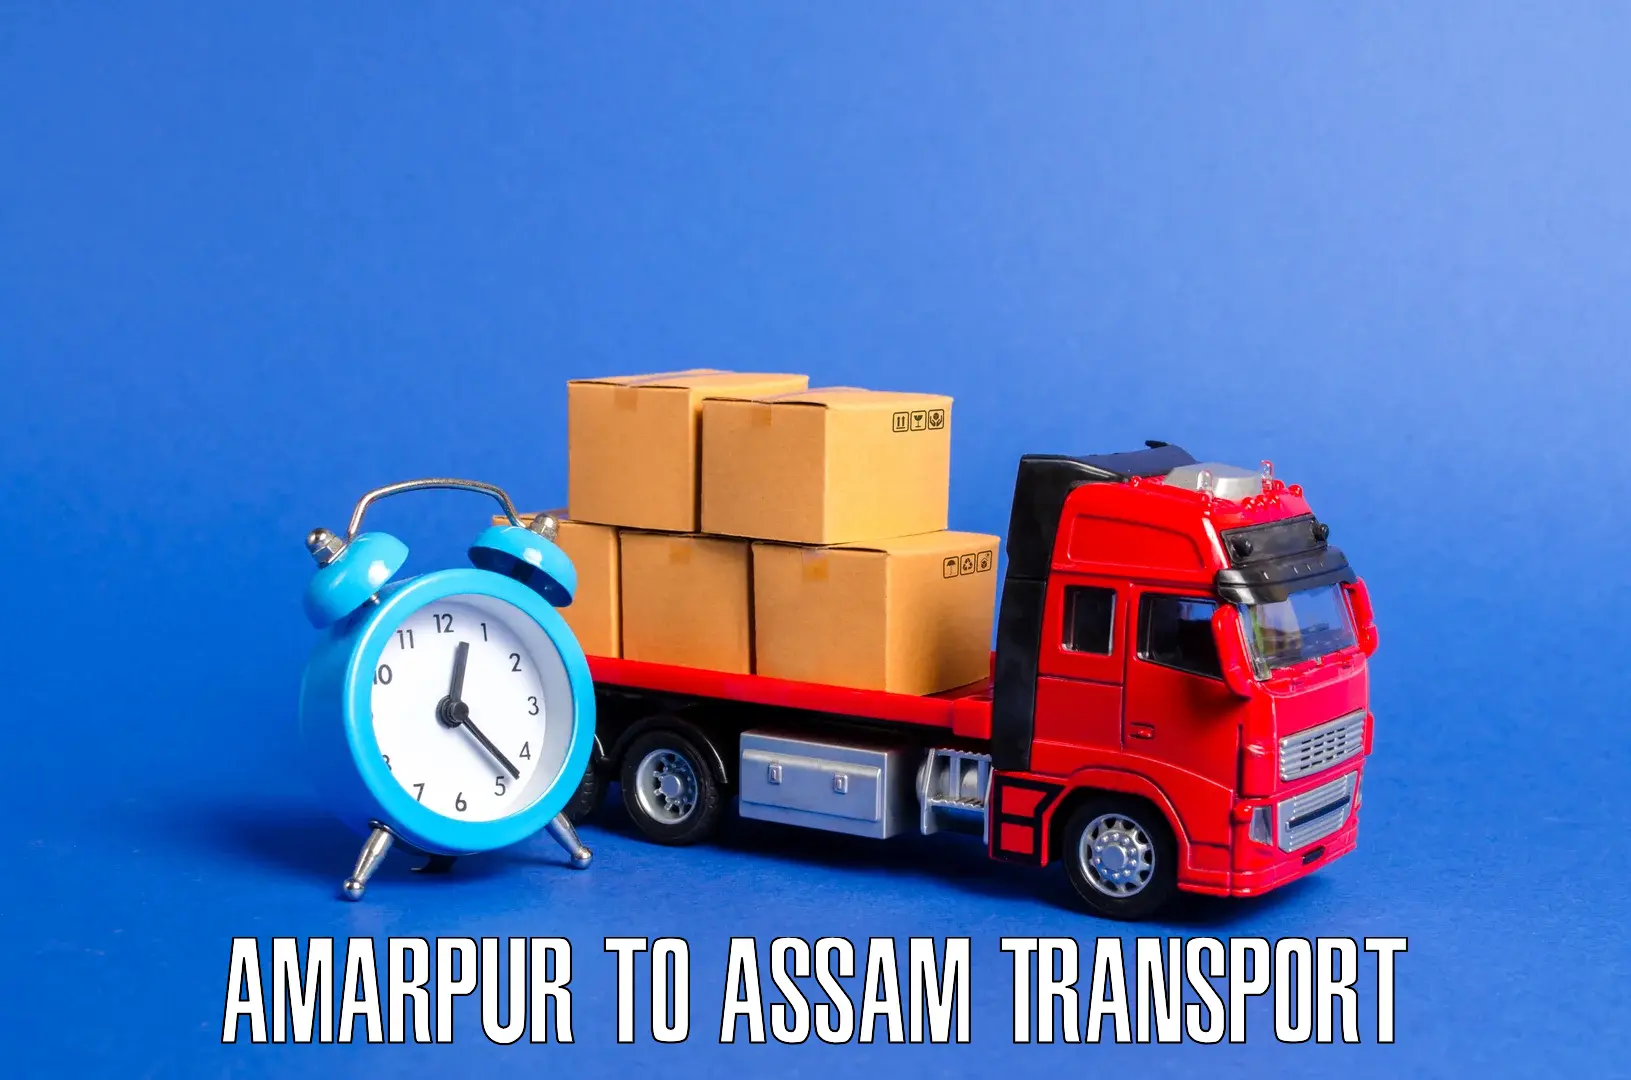 Interstate transport services Amarpur to Banderdewa